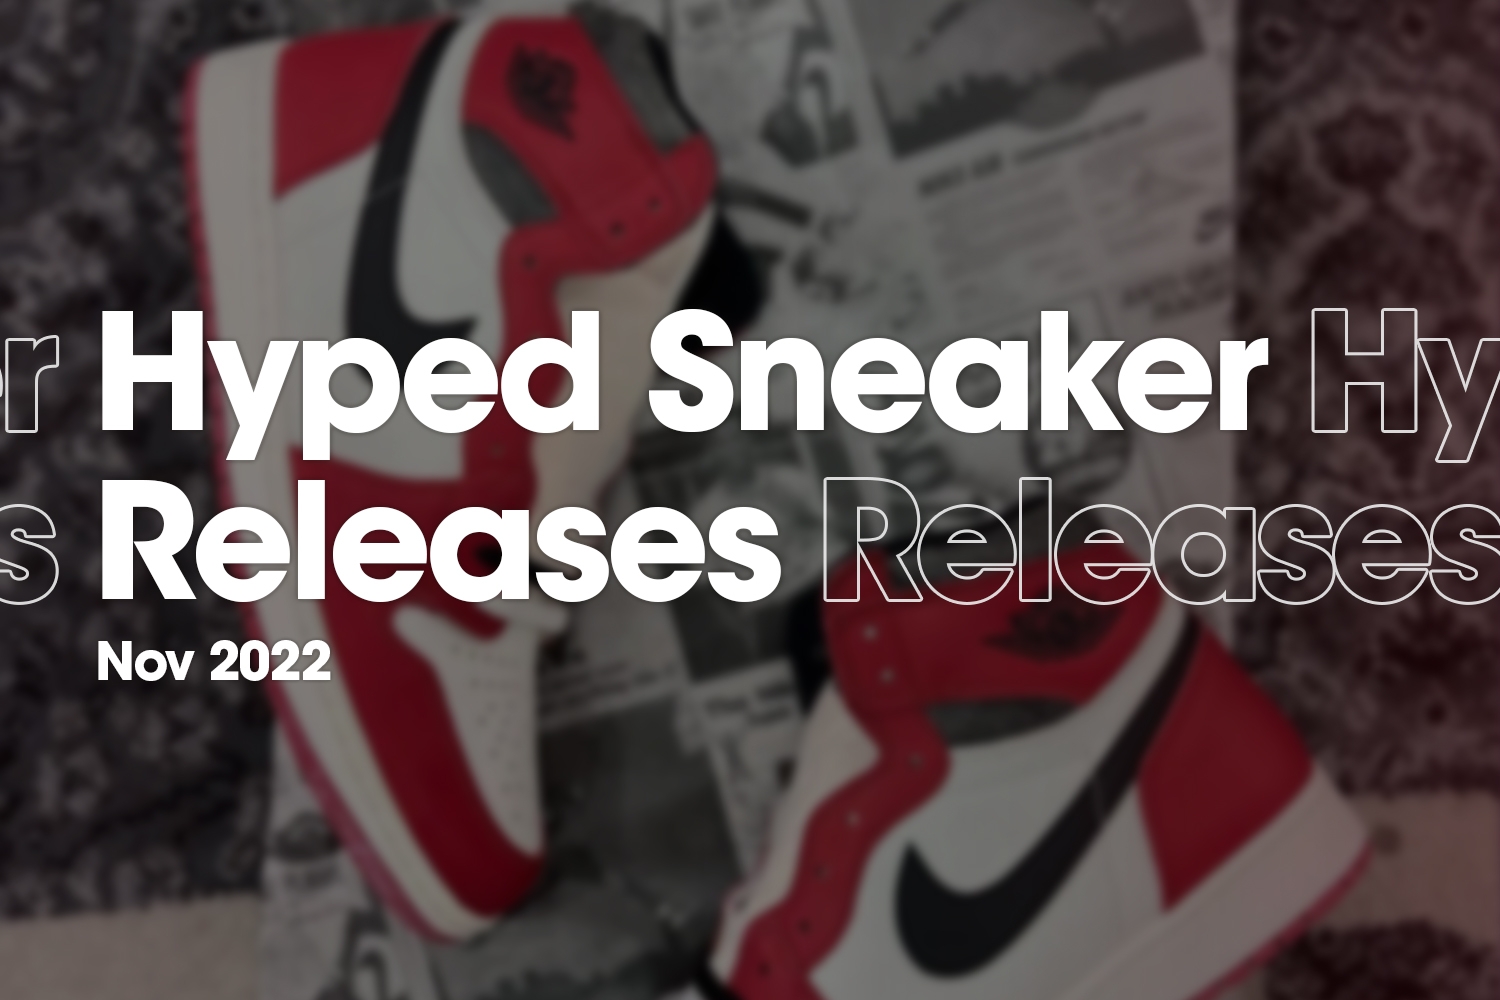 Hyped Sneaker Releases van november 2022